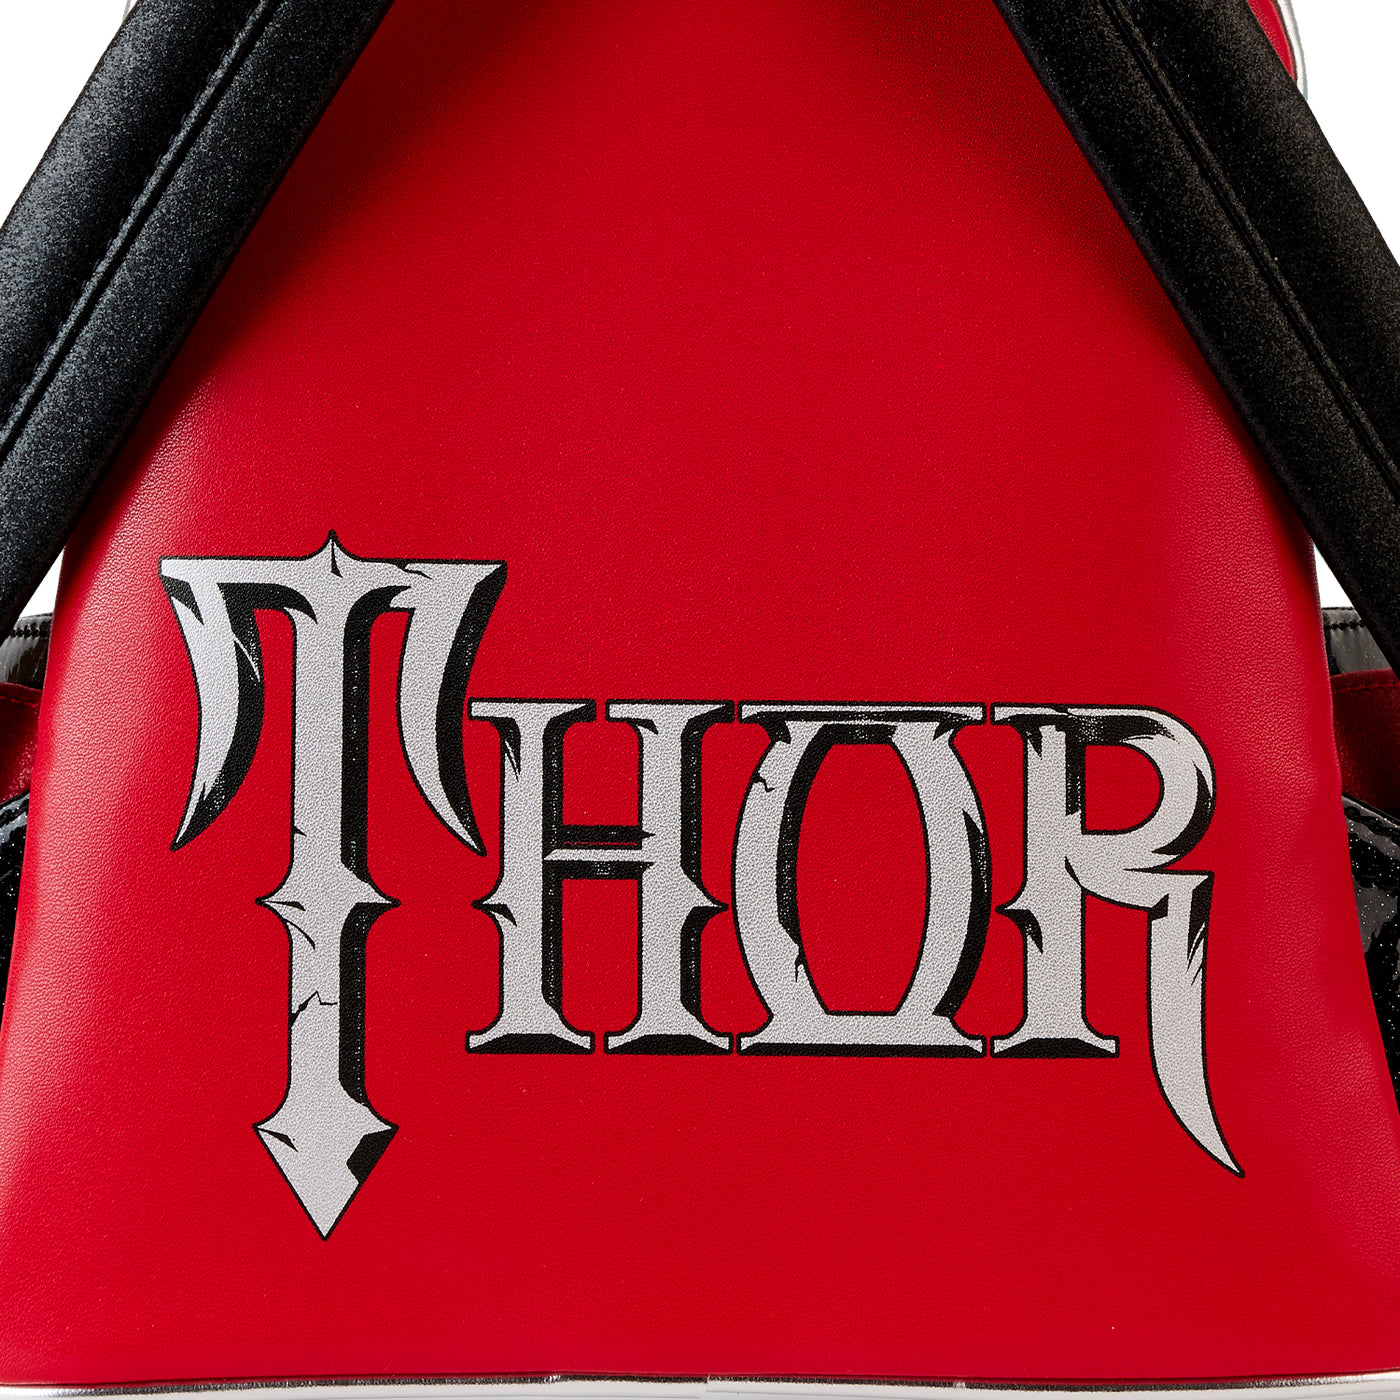 Marvel Metallic Thor Cosplay Mini Backpack